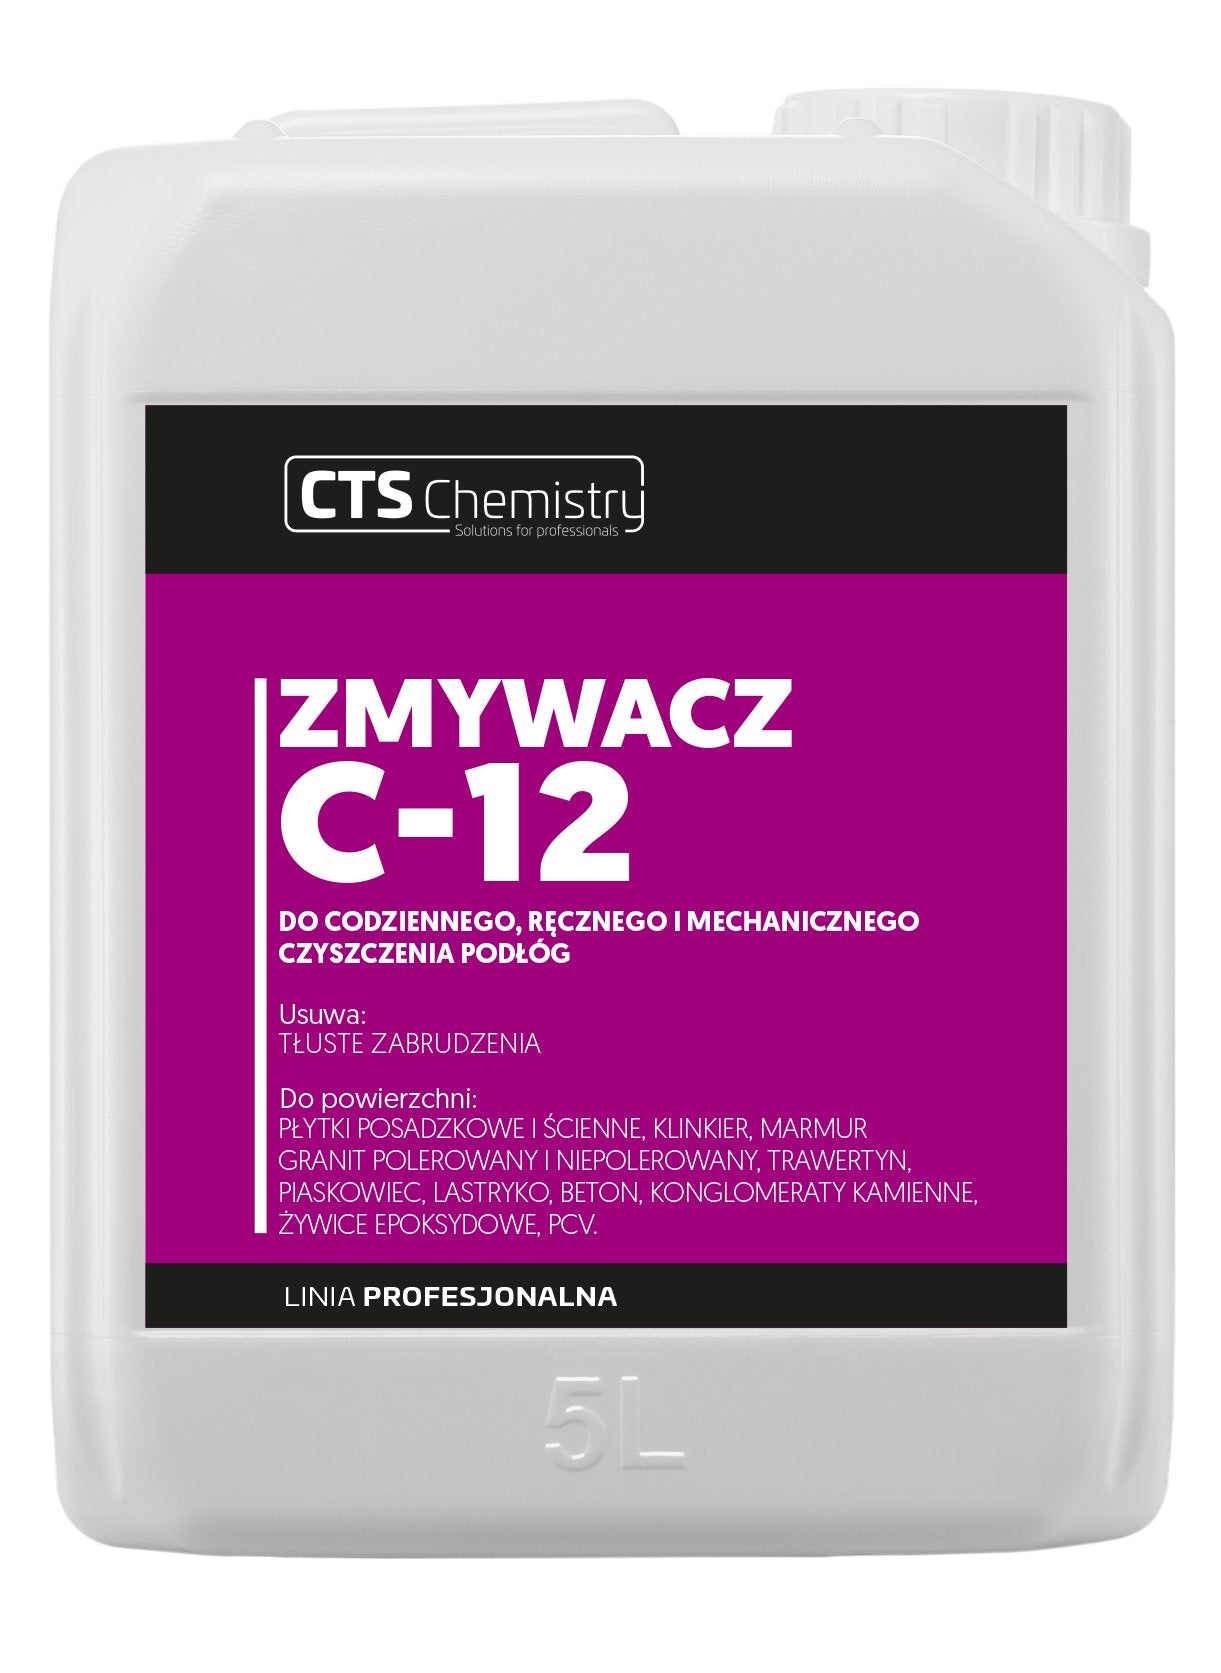 Zmywacz C-12 do tłustych zabrudzeń CTS Chemistry - e-nubes